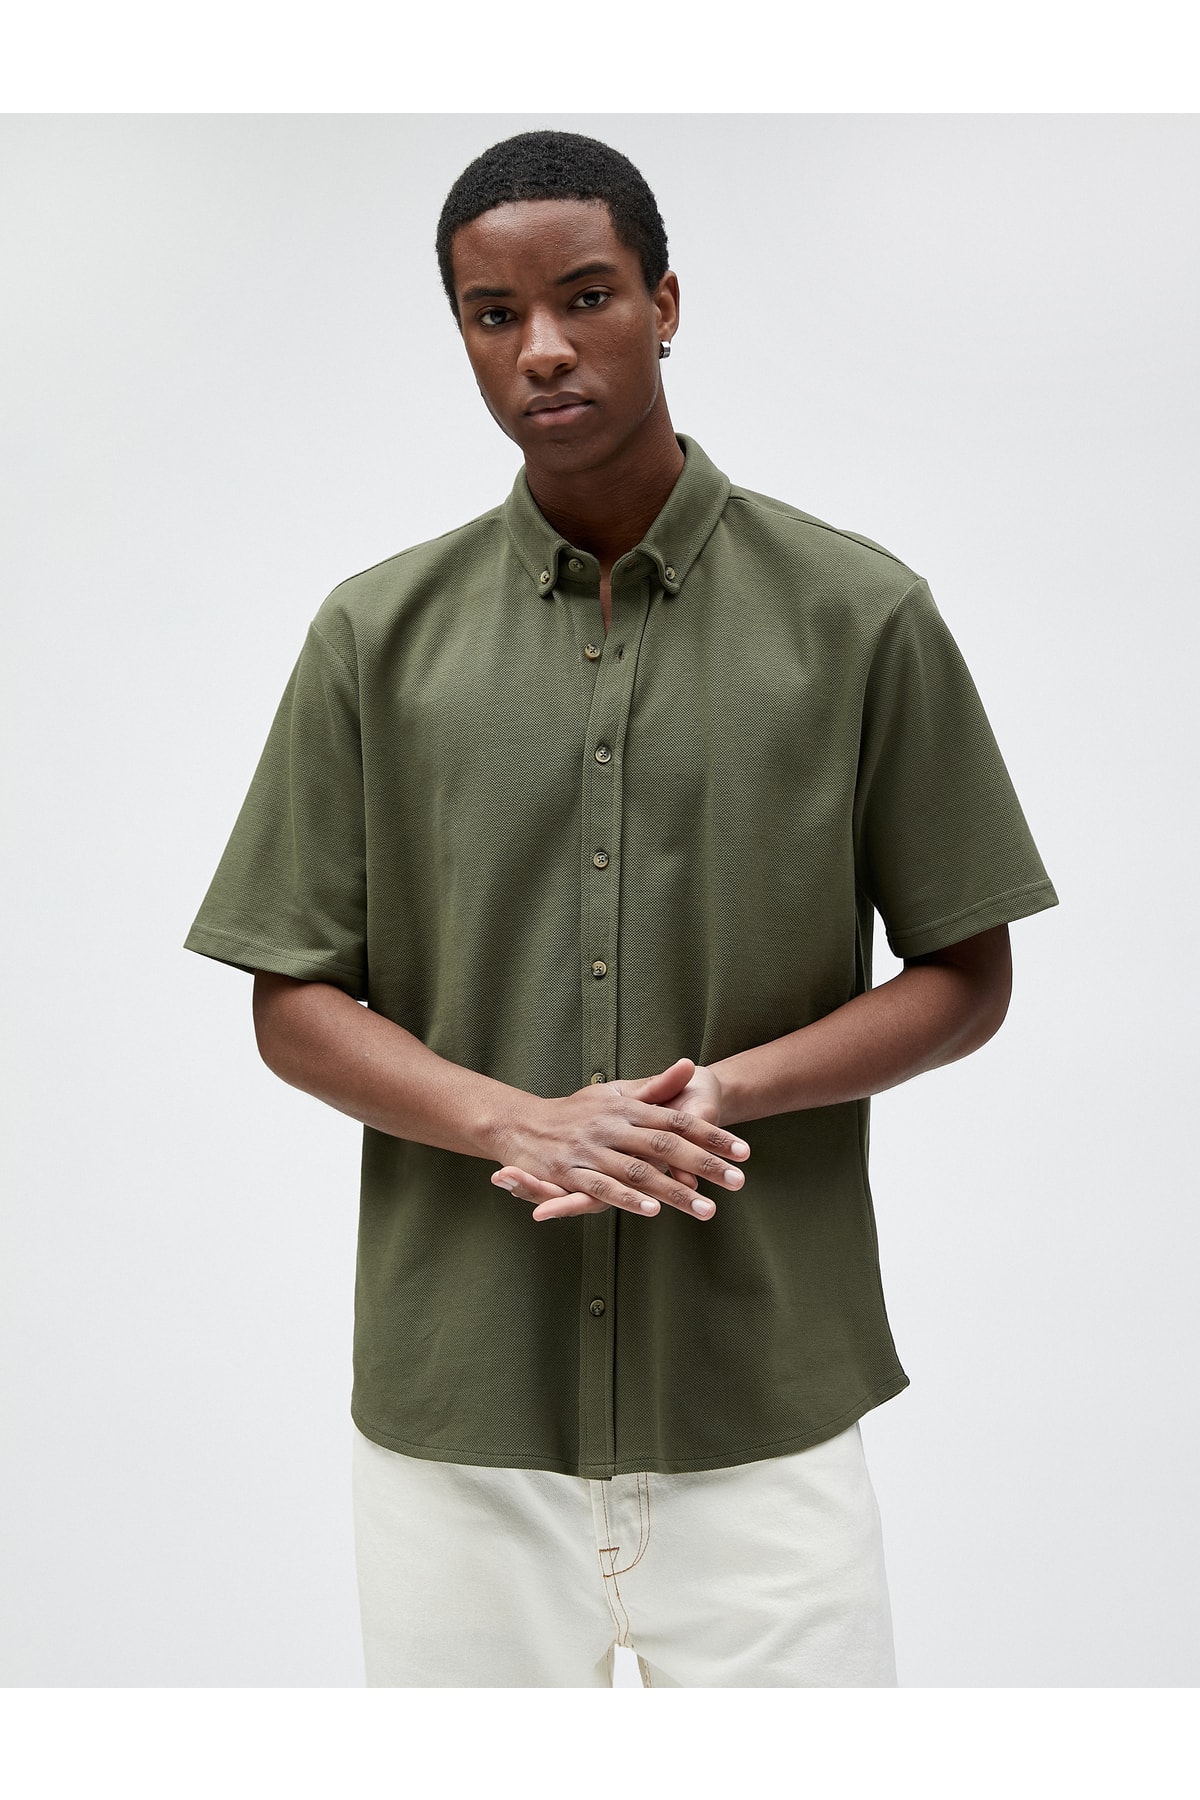 Базовая рубашка с коротким рукавом, классический воротник на пуговицах, хлопок Koton, хаки базовая футболка с воротником поло на пуговицах с коротким рукавом koton хаки